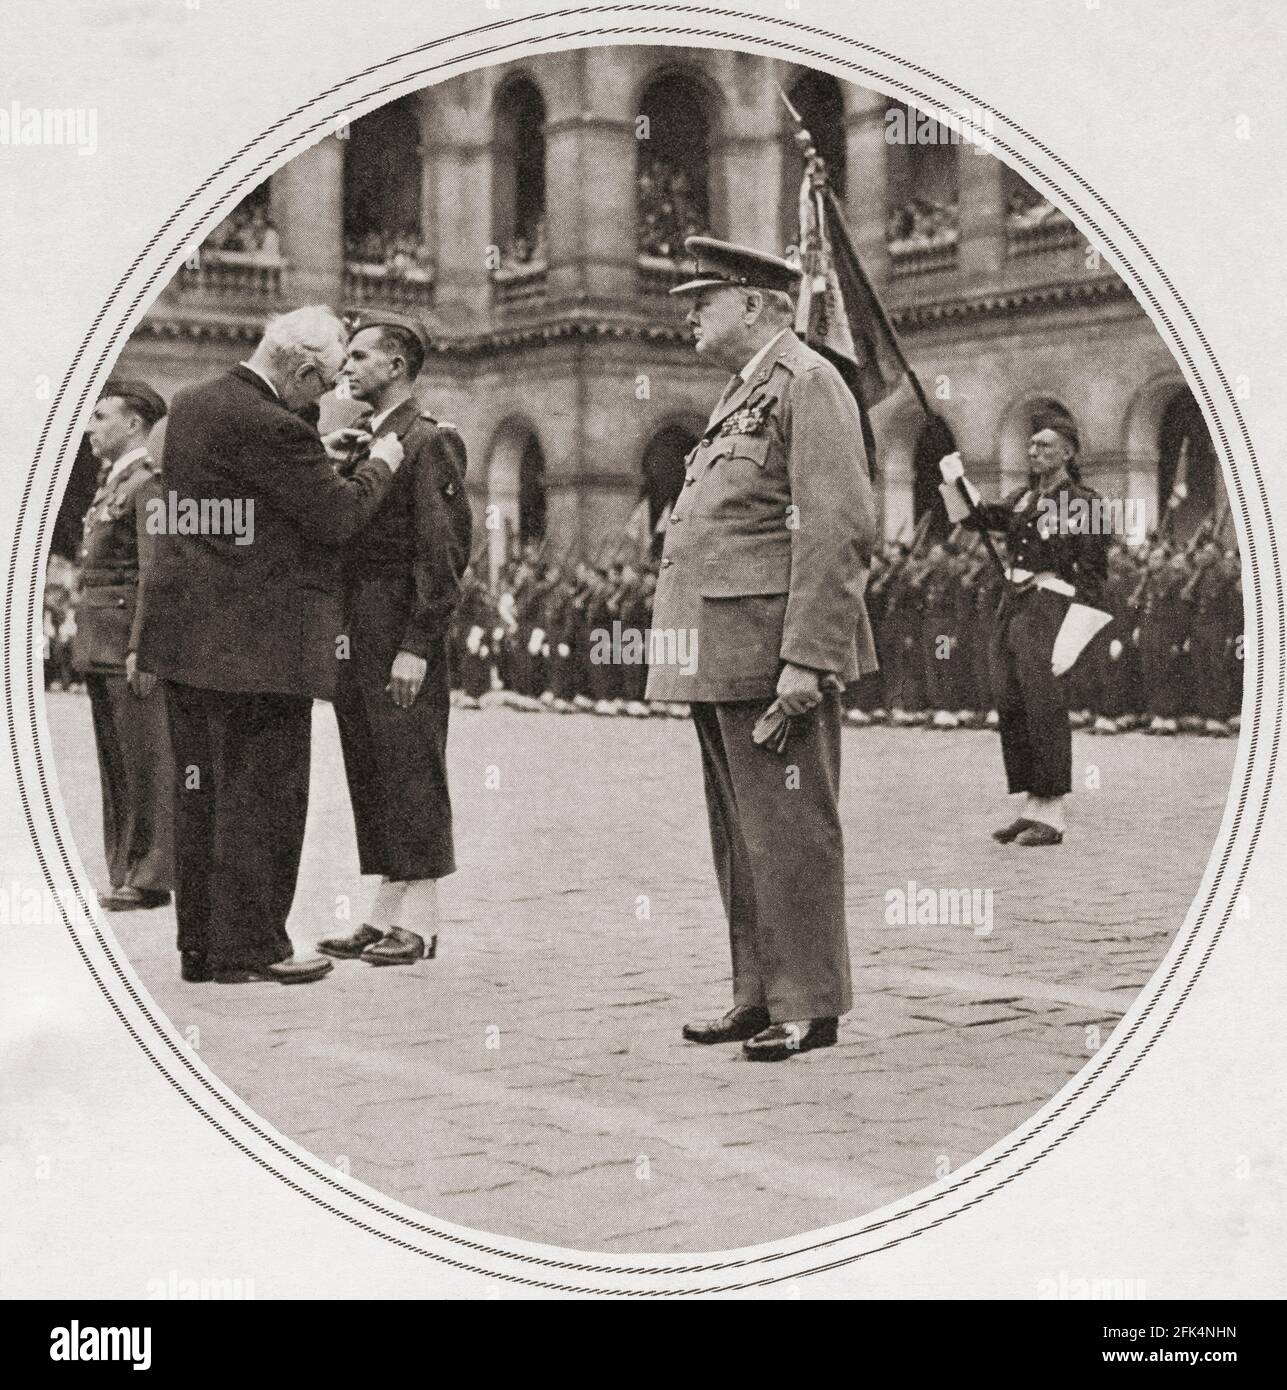 Winston Churchill décoré avec le plus haut honneur militaire de France, la Medaille militaire, dans la cour des Invalides, Paris, France, 1947. Sir Winston Leonard Spencer-Churchill, 1874 – 1965. Politicien britannique, officier de l'armée, écrivain et deux fois Premier ministre du Royaume-Uni. Banque D'Images